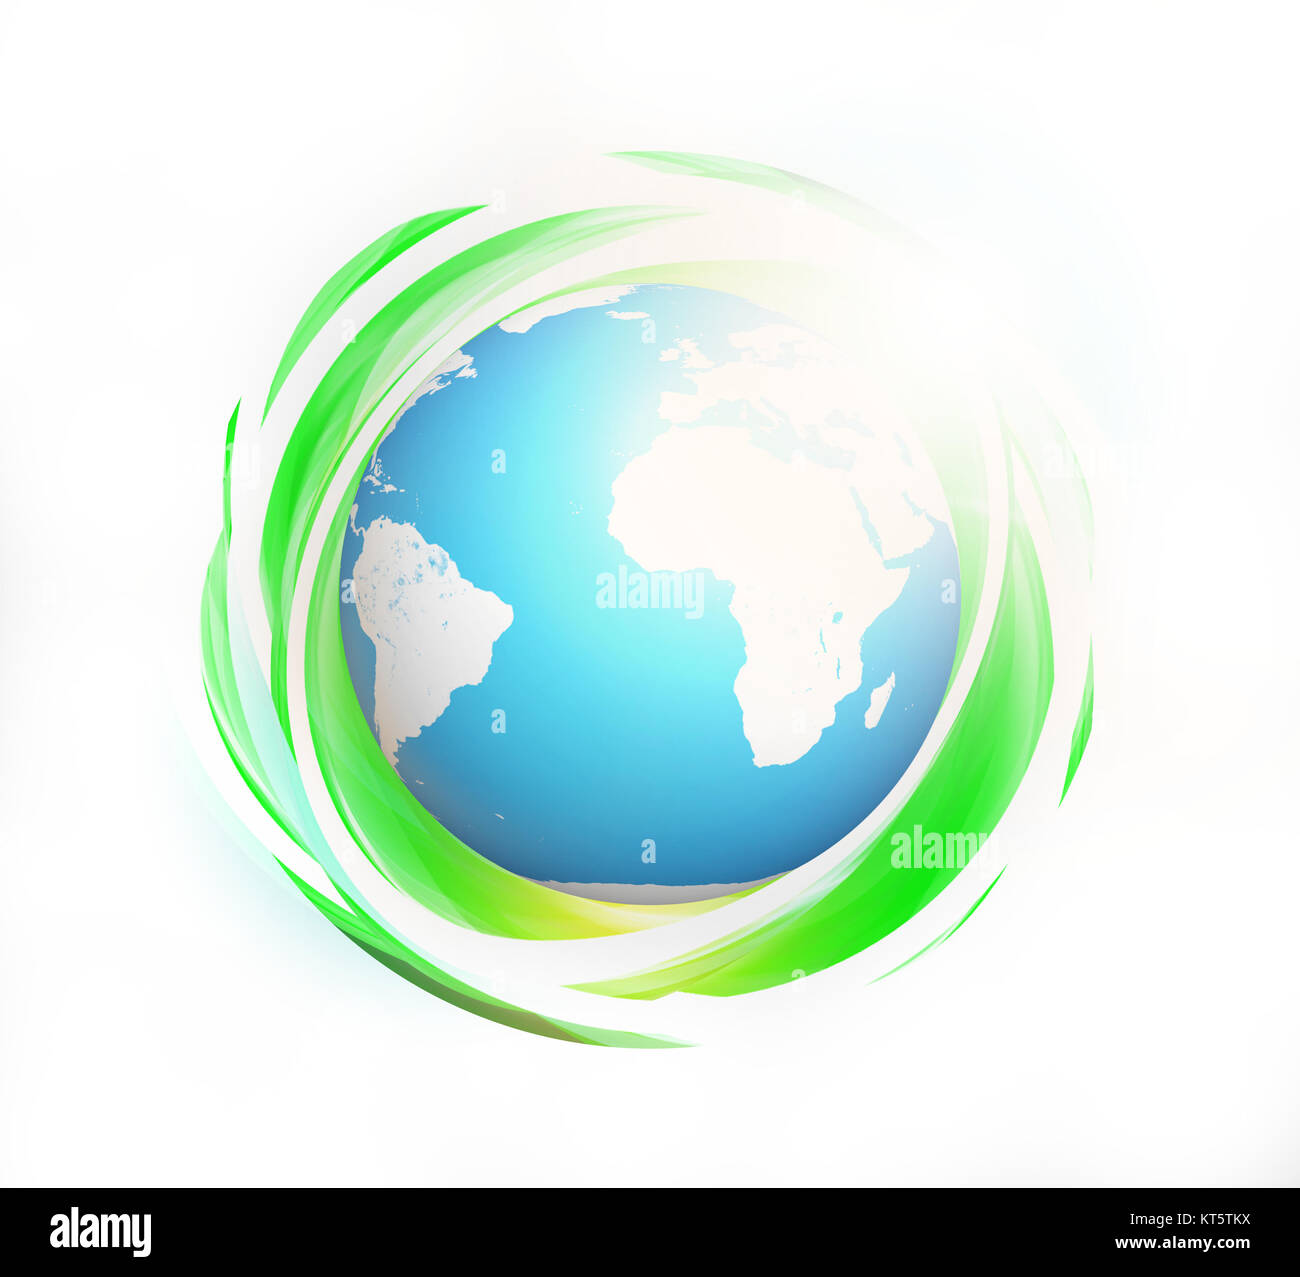 grüne, umweltfreundliche abstrakt 3d Render. Elemente des Bildes von der NASA eingerichtet. Stockfoto